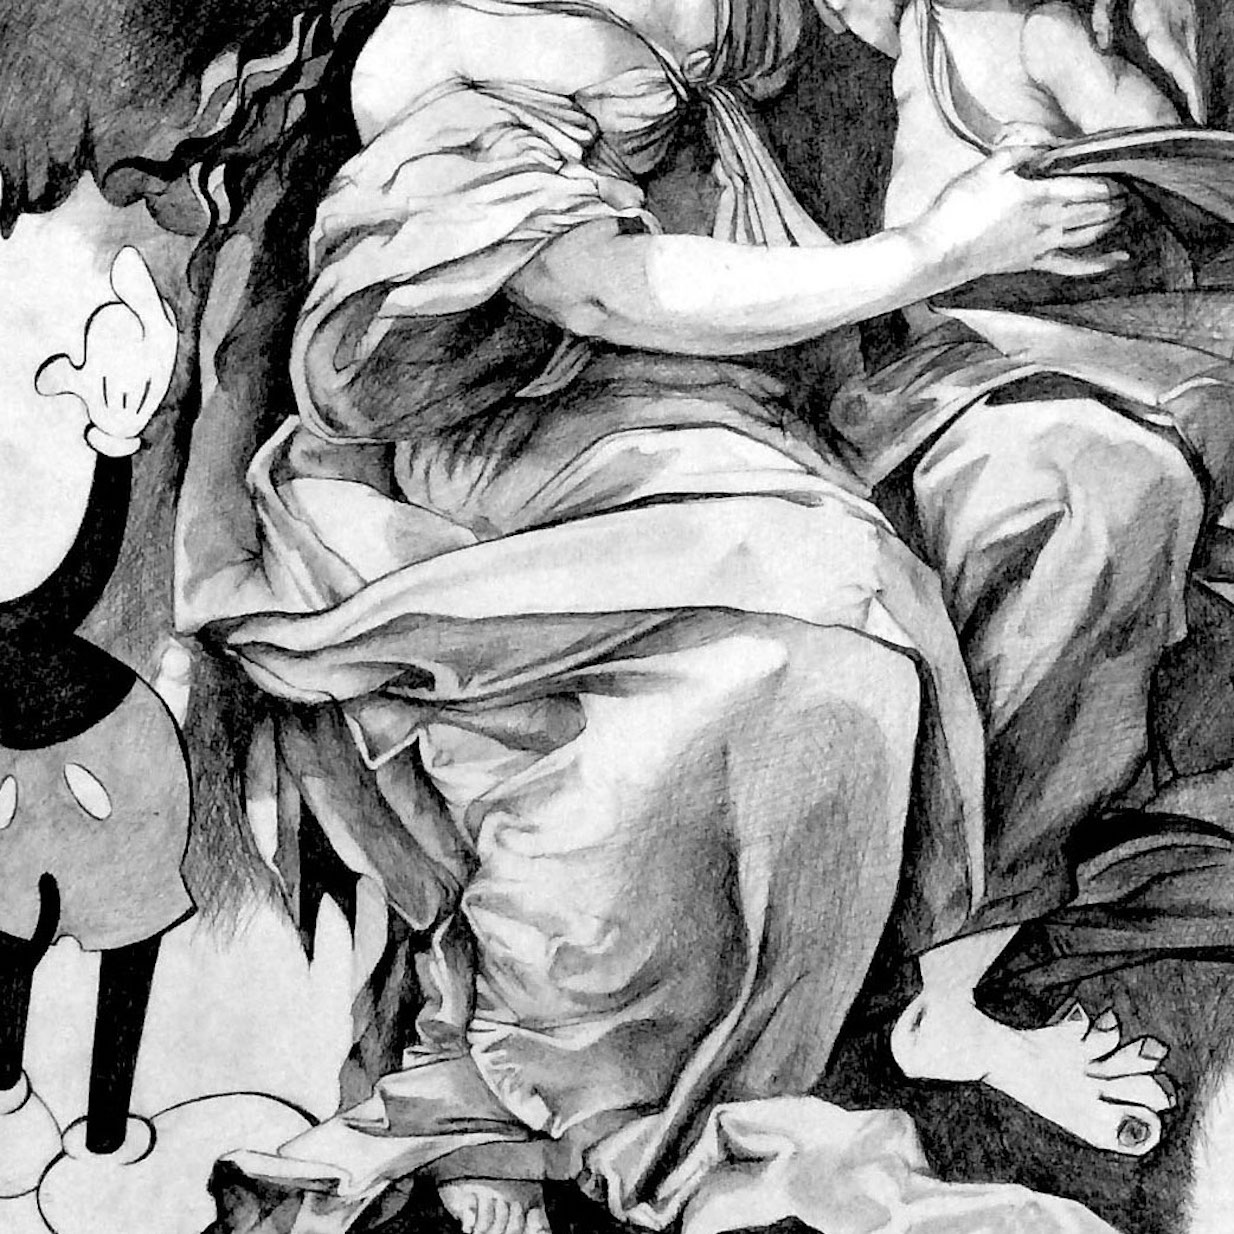 Cécile Bisciglia - Vandalisées, toile, stylo, encre, noire, grand, format, géant, vandalize, tall, giant, black, lifelike portrait